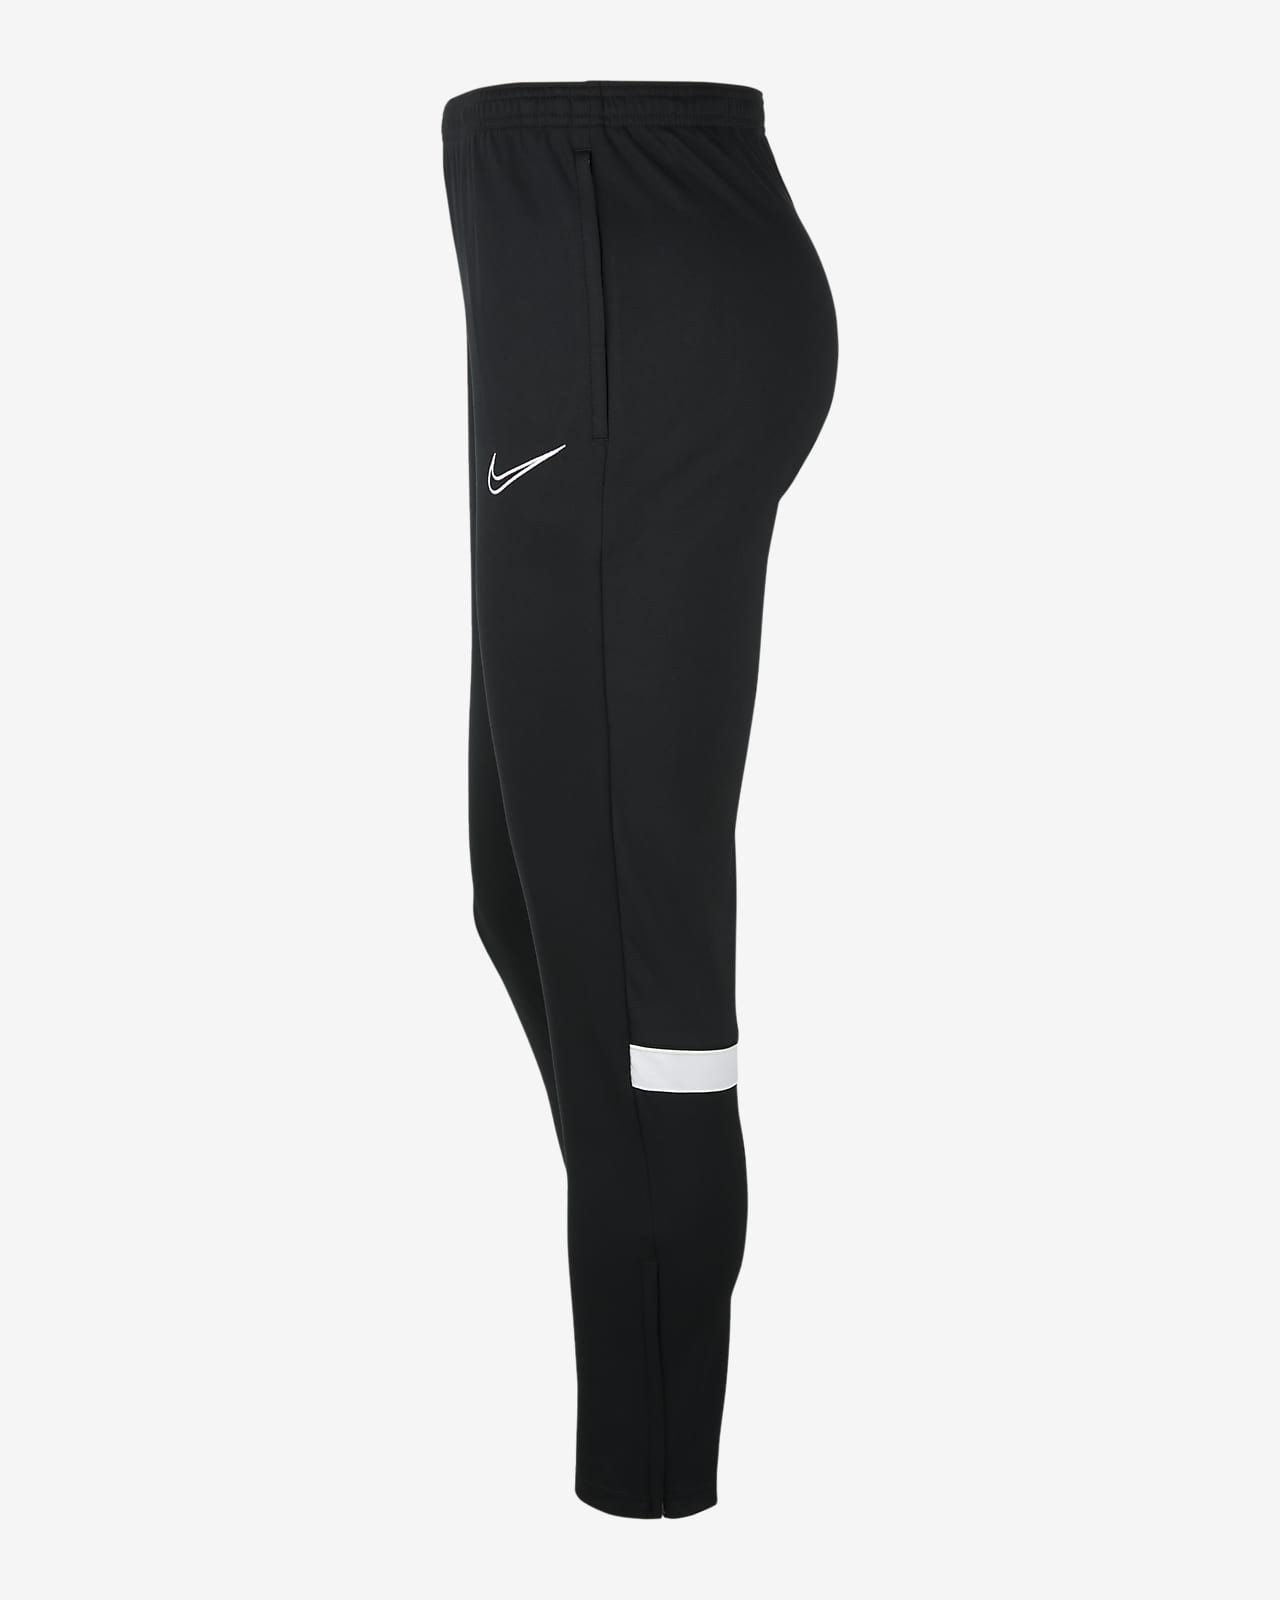 Nike Dri-fit Academy Pantalon d'entraînement pour homme, noir